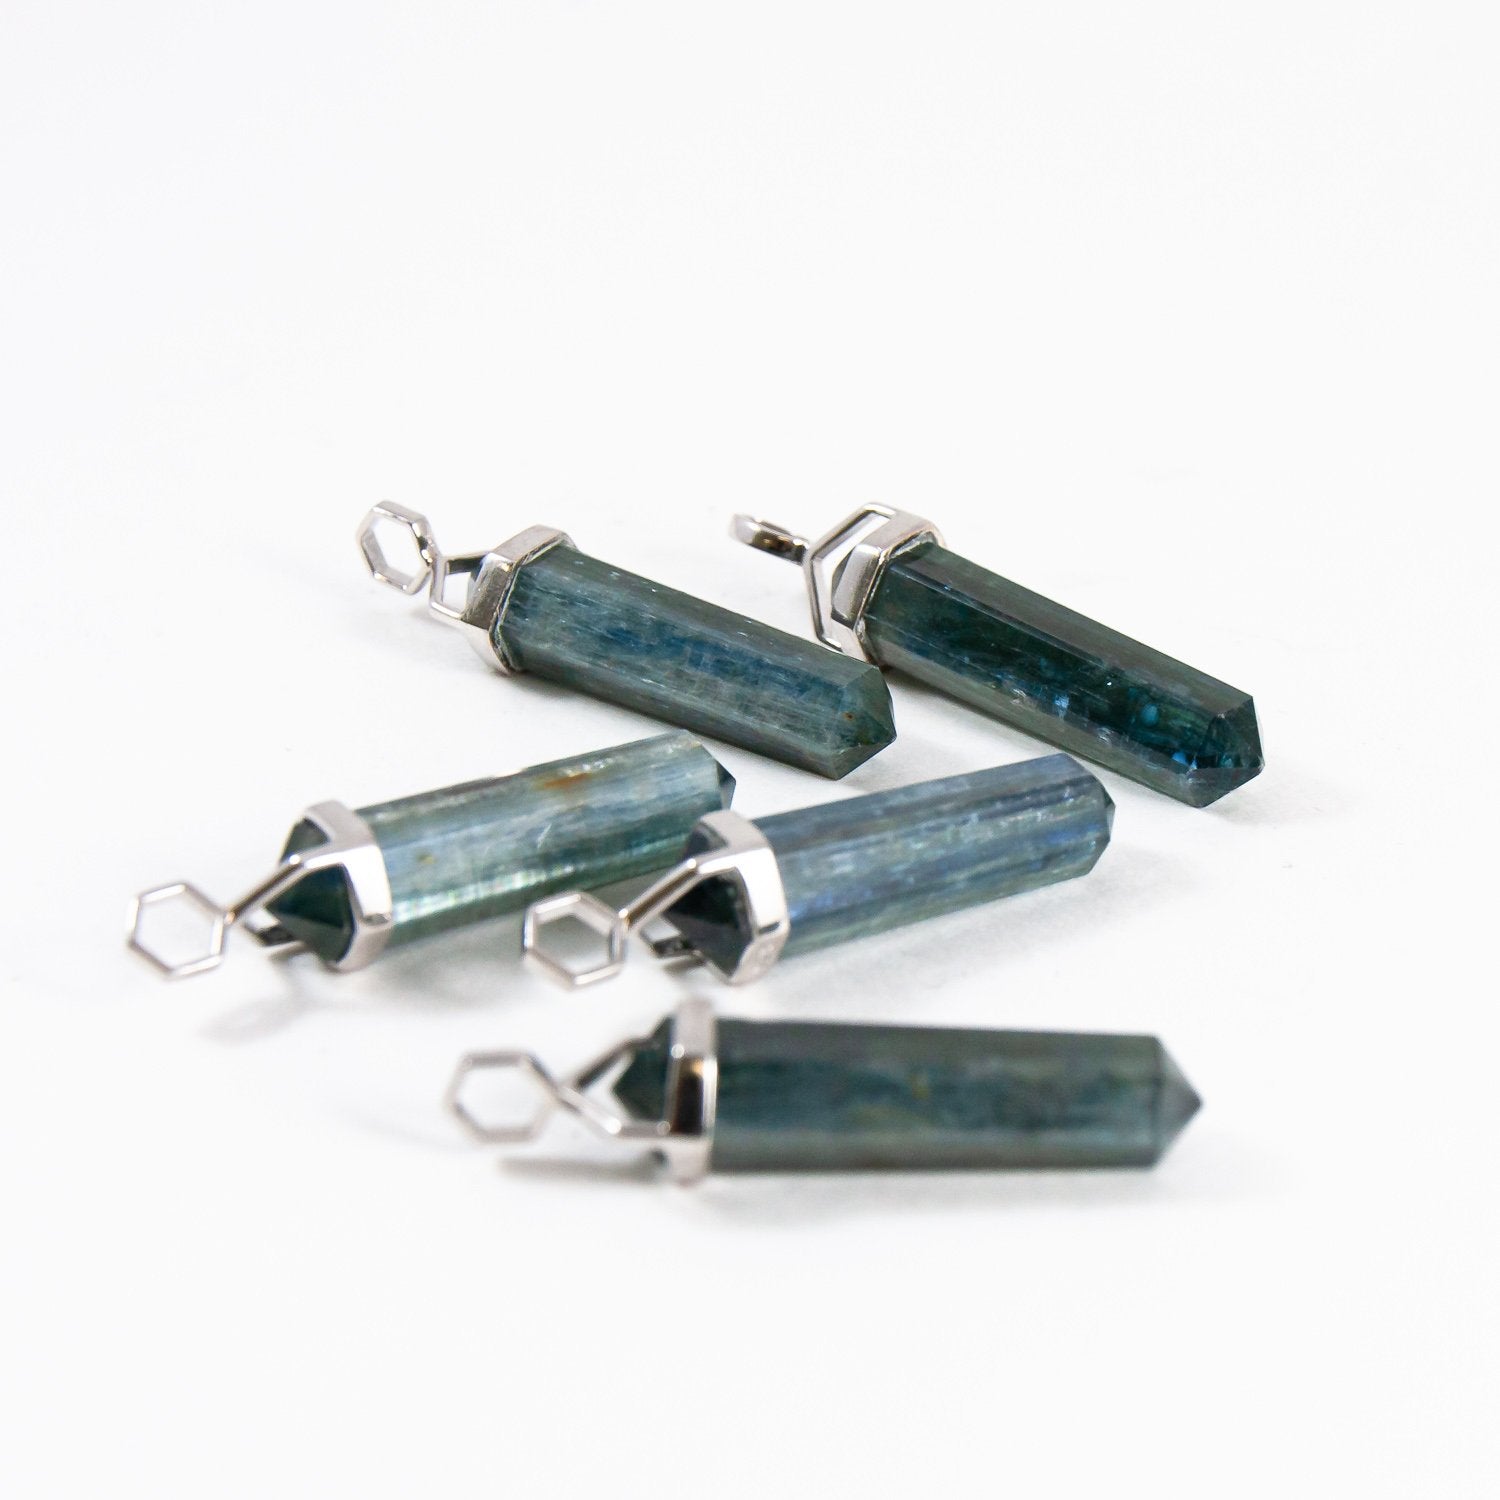 Kyanite crystal pendants.